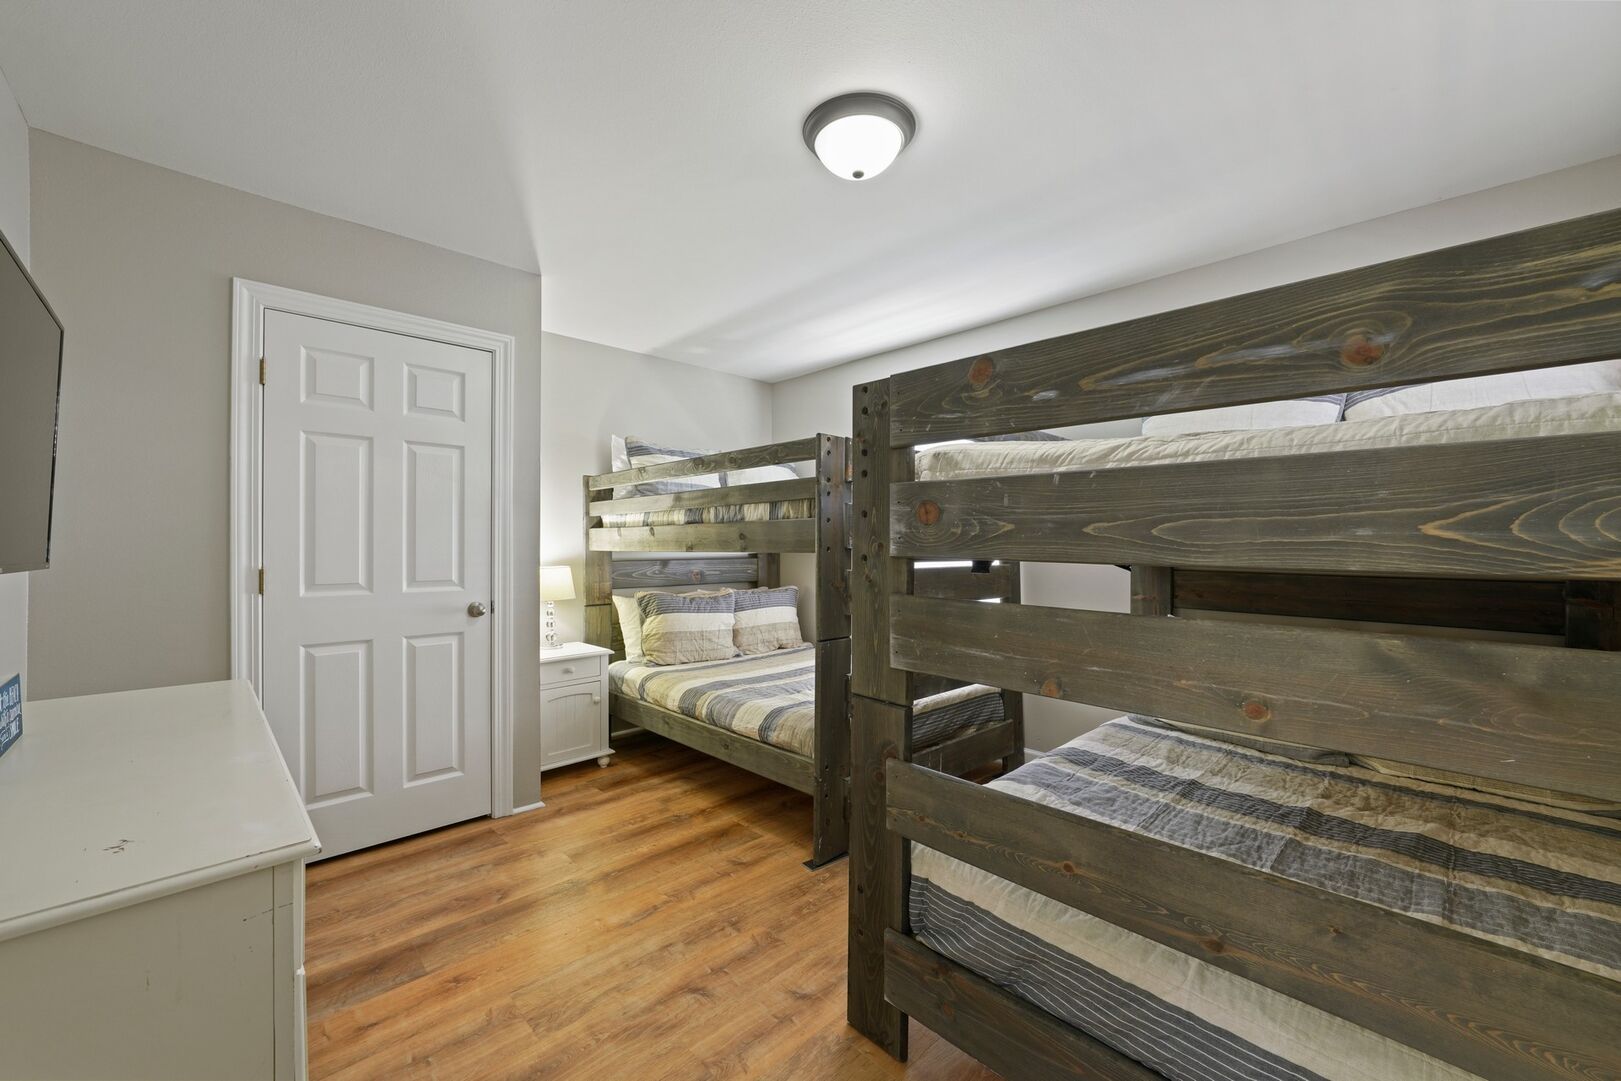 2nd floor bunk room (3 bedroom home)